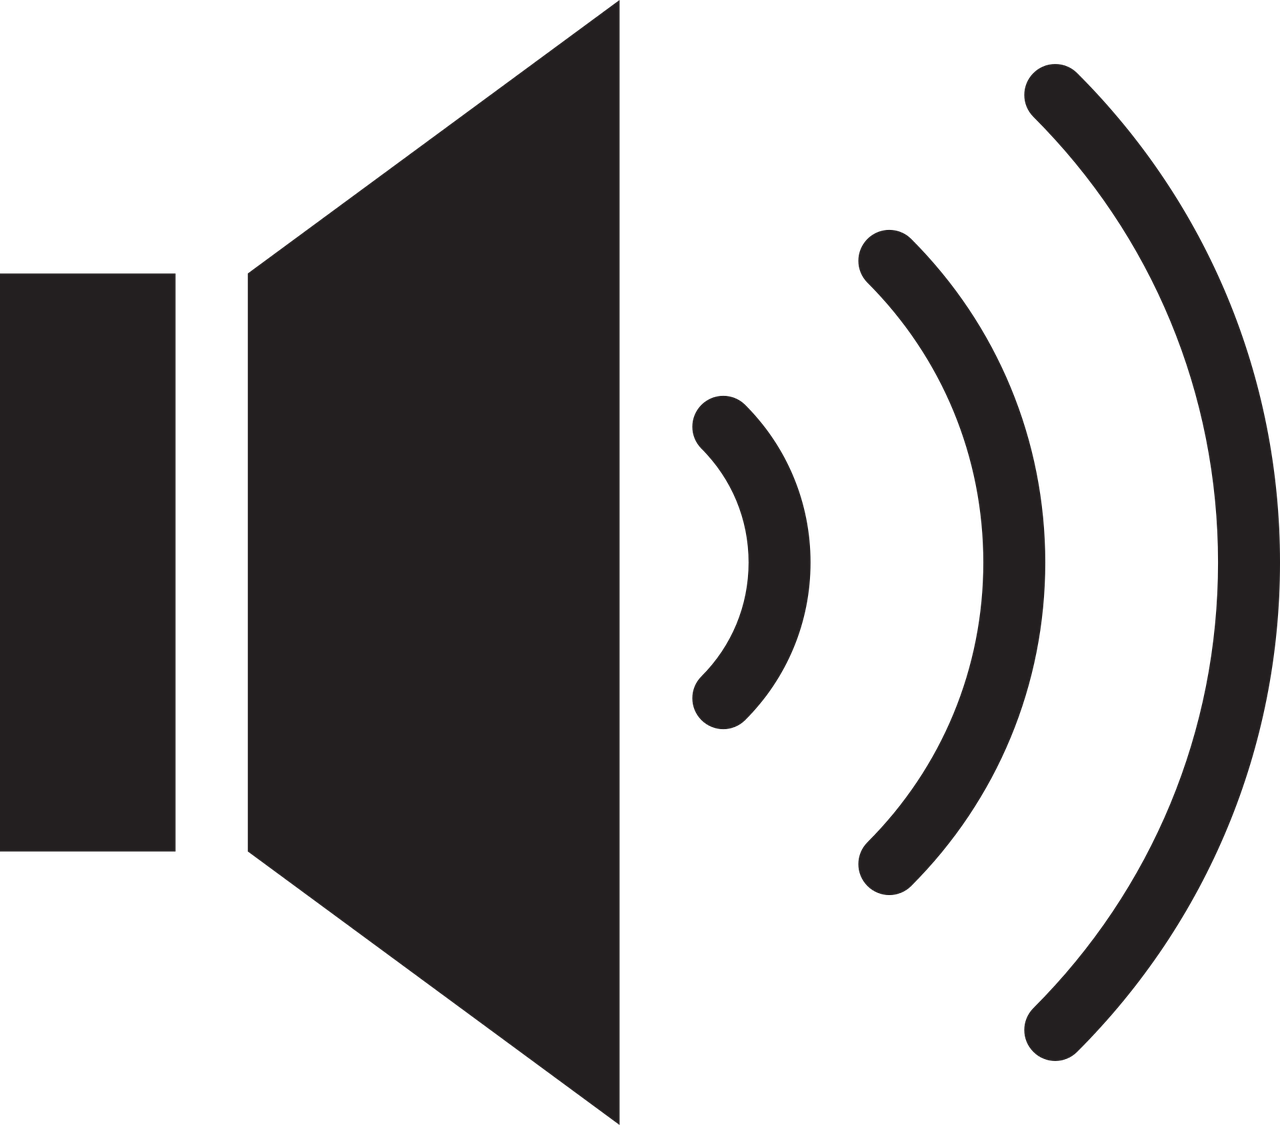 Click this audio symbol to listen